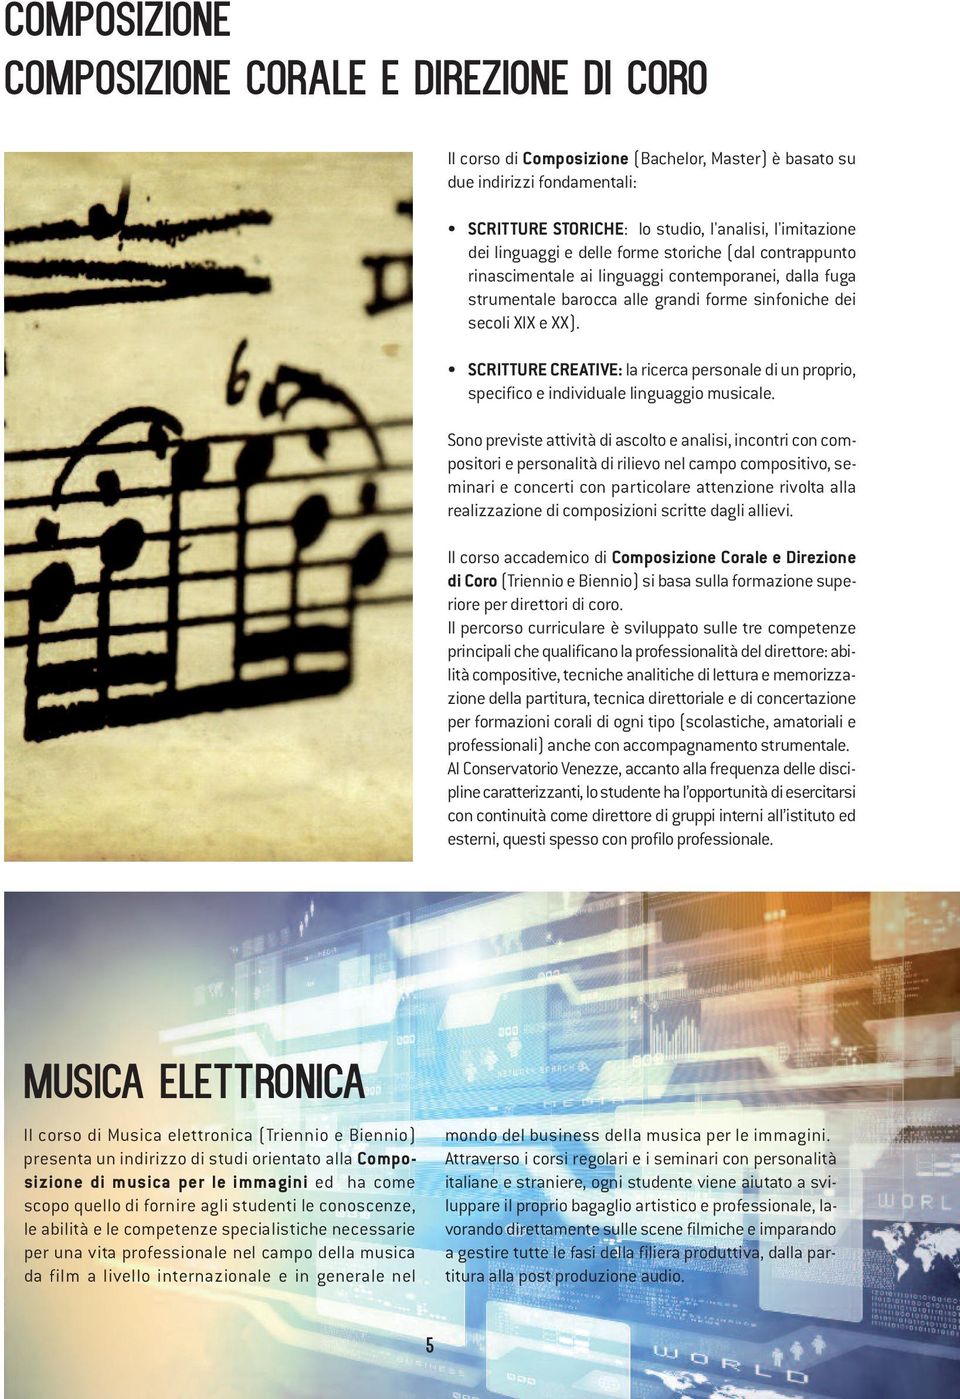 SCRITTURE CREATIVE: la ricerca personale di un proprio, specifico e individuale linguaggio musicale.